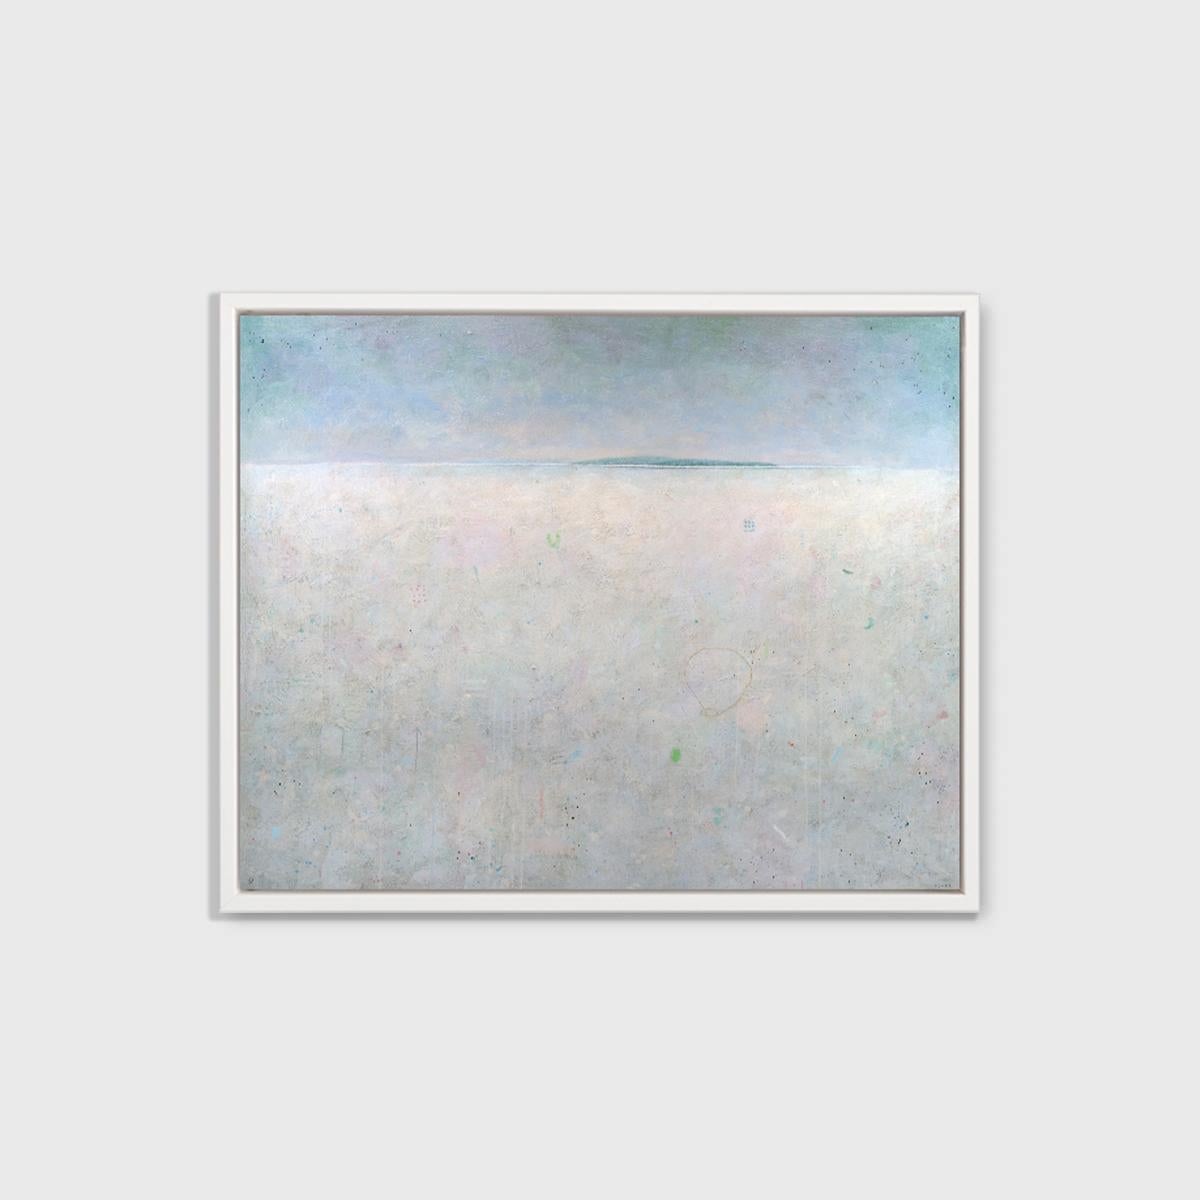 Ce paysage abstrait imprimé en édition limitée par Elwood Howell présente une ligne d'horizon élevée, séparant un premier plan pâle, presque gris, et un ciel dégradé de bleu. Le long de la ligne d'horizon, une mince étendue bleue de ce qui semble